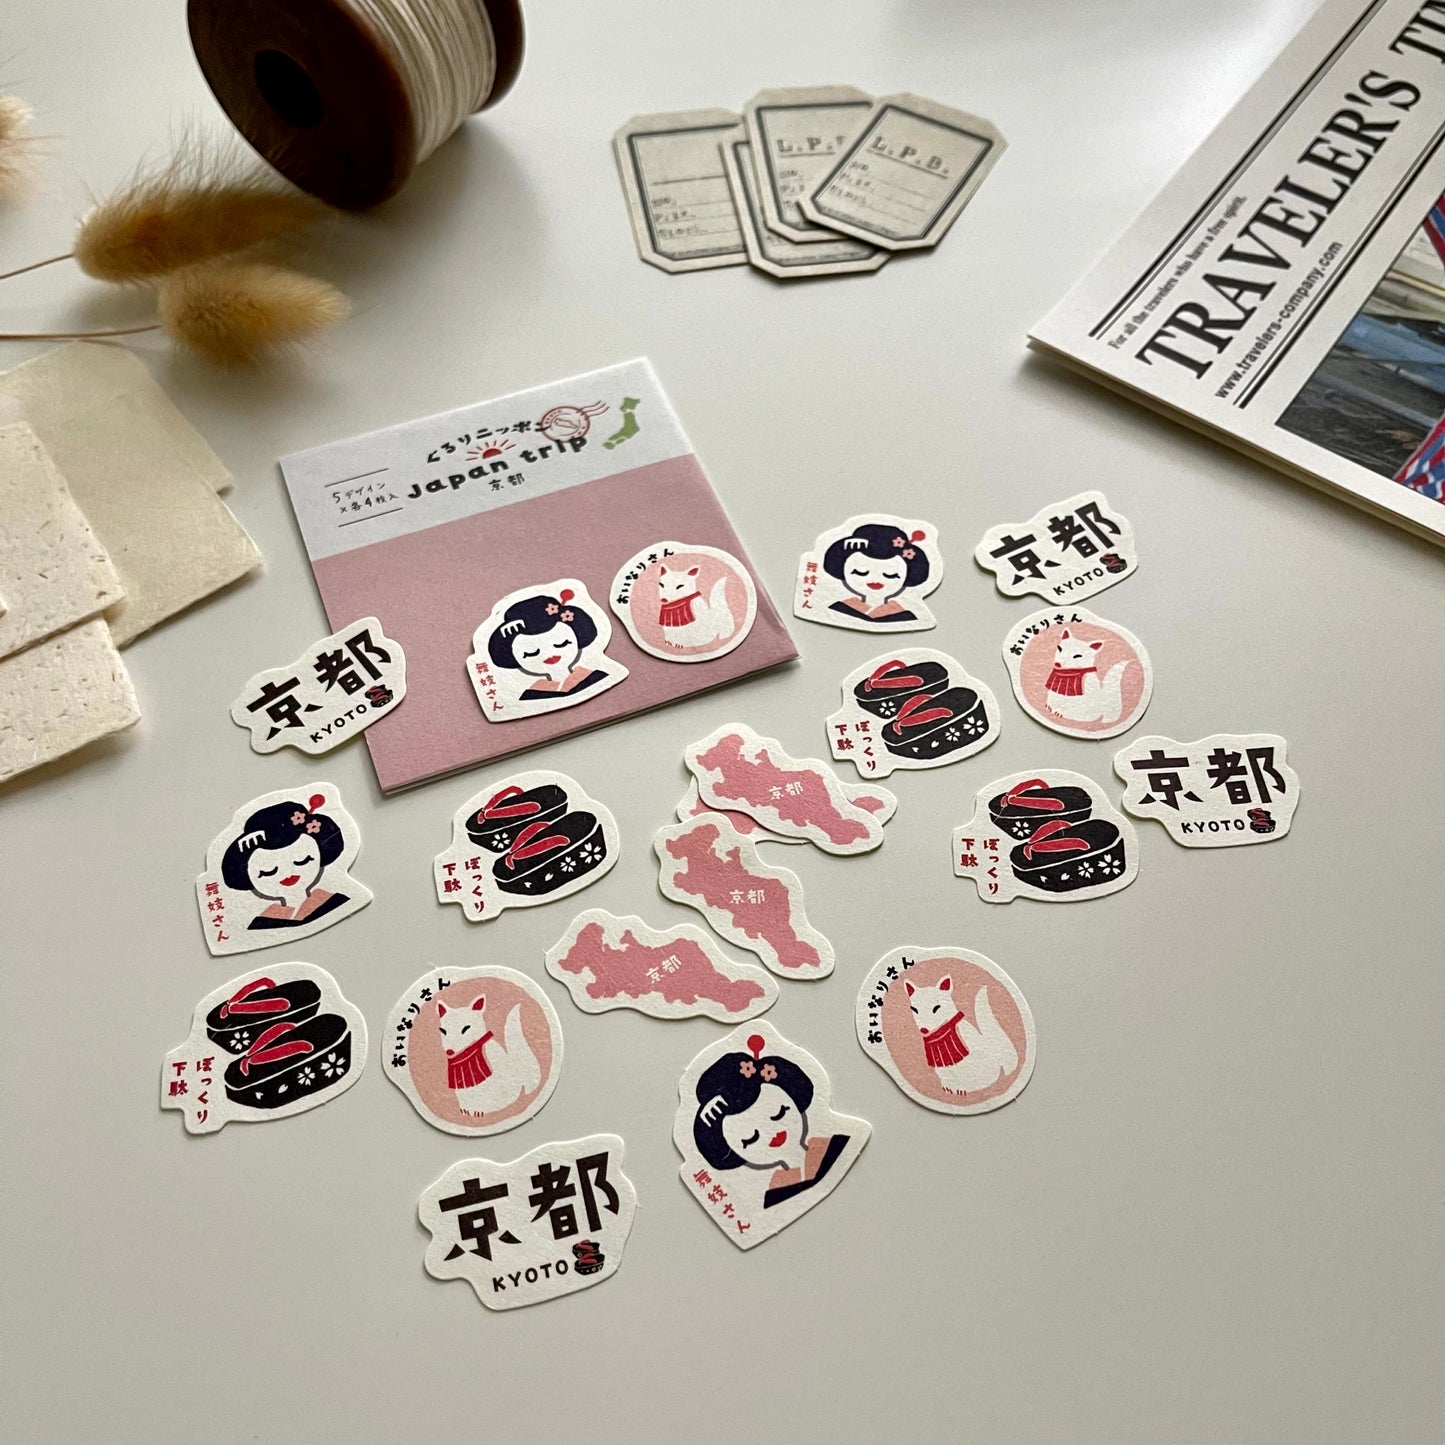 Furukawashiko Japan Trip Sticker Pack | Kyoto